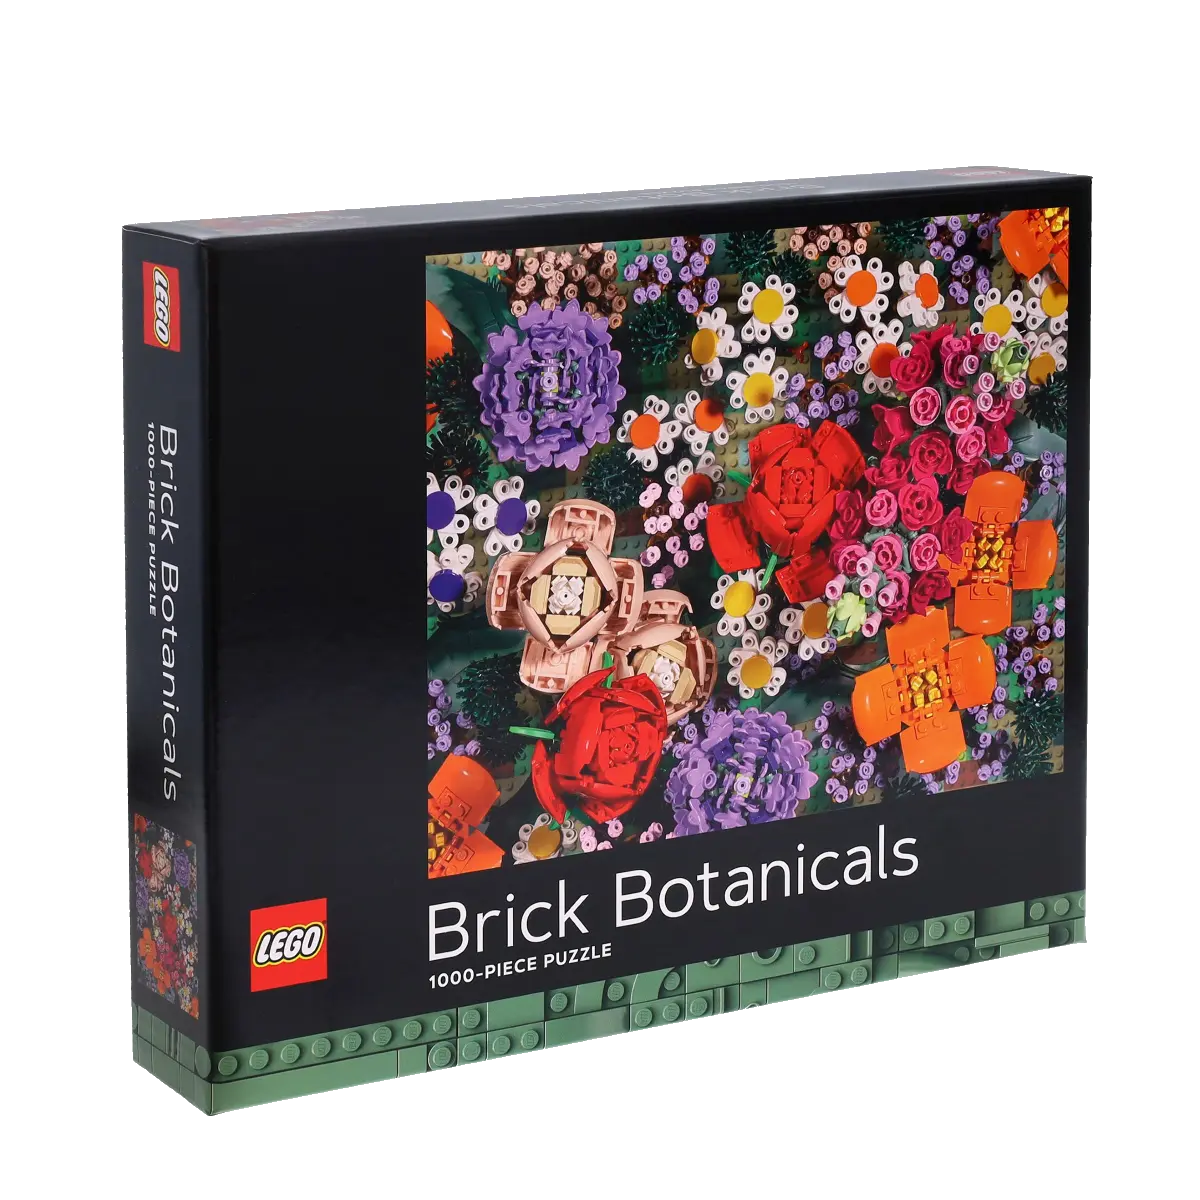 Brick Botanicals - LEGO puzzle (1000 Pieces)